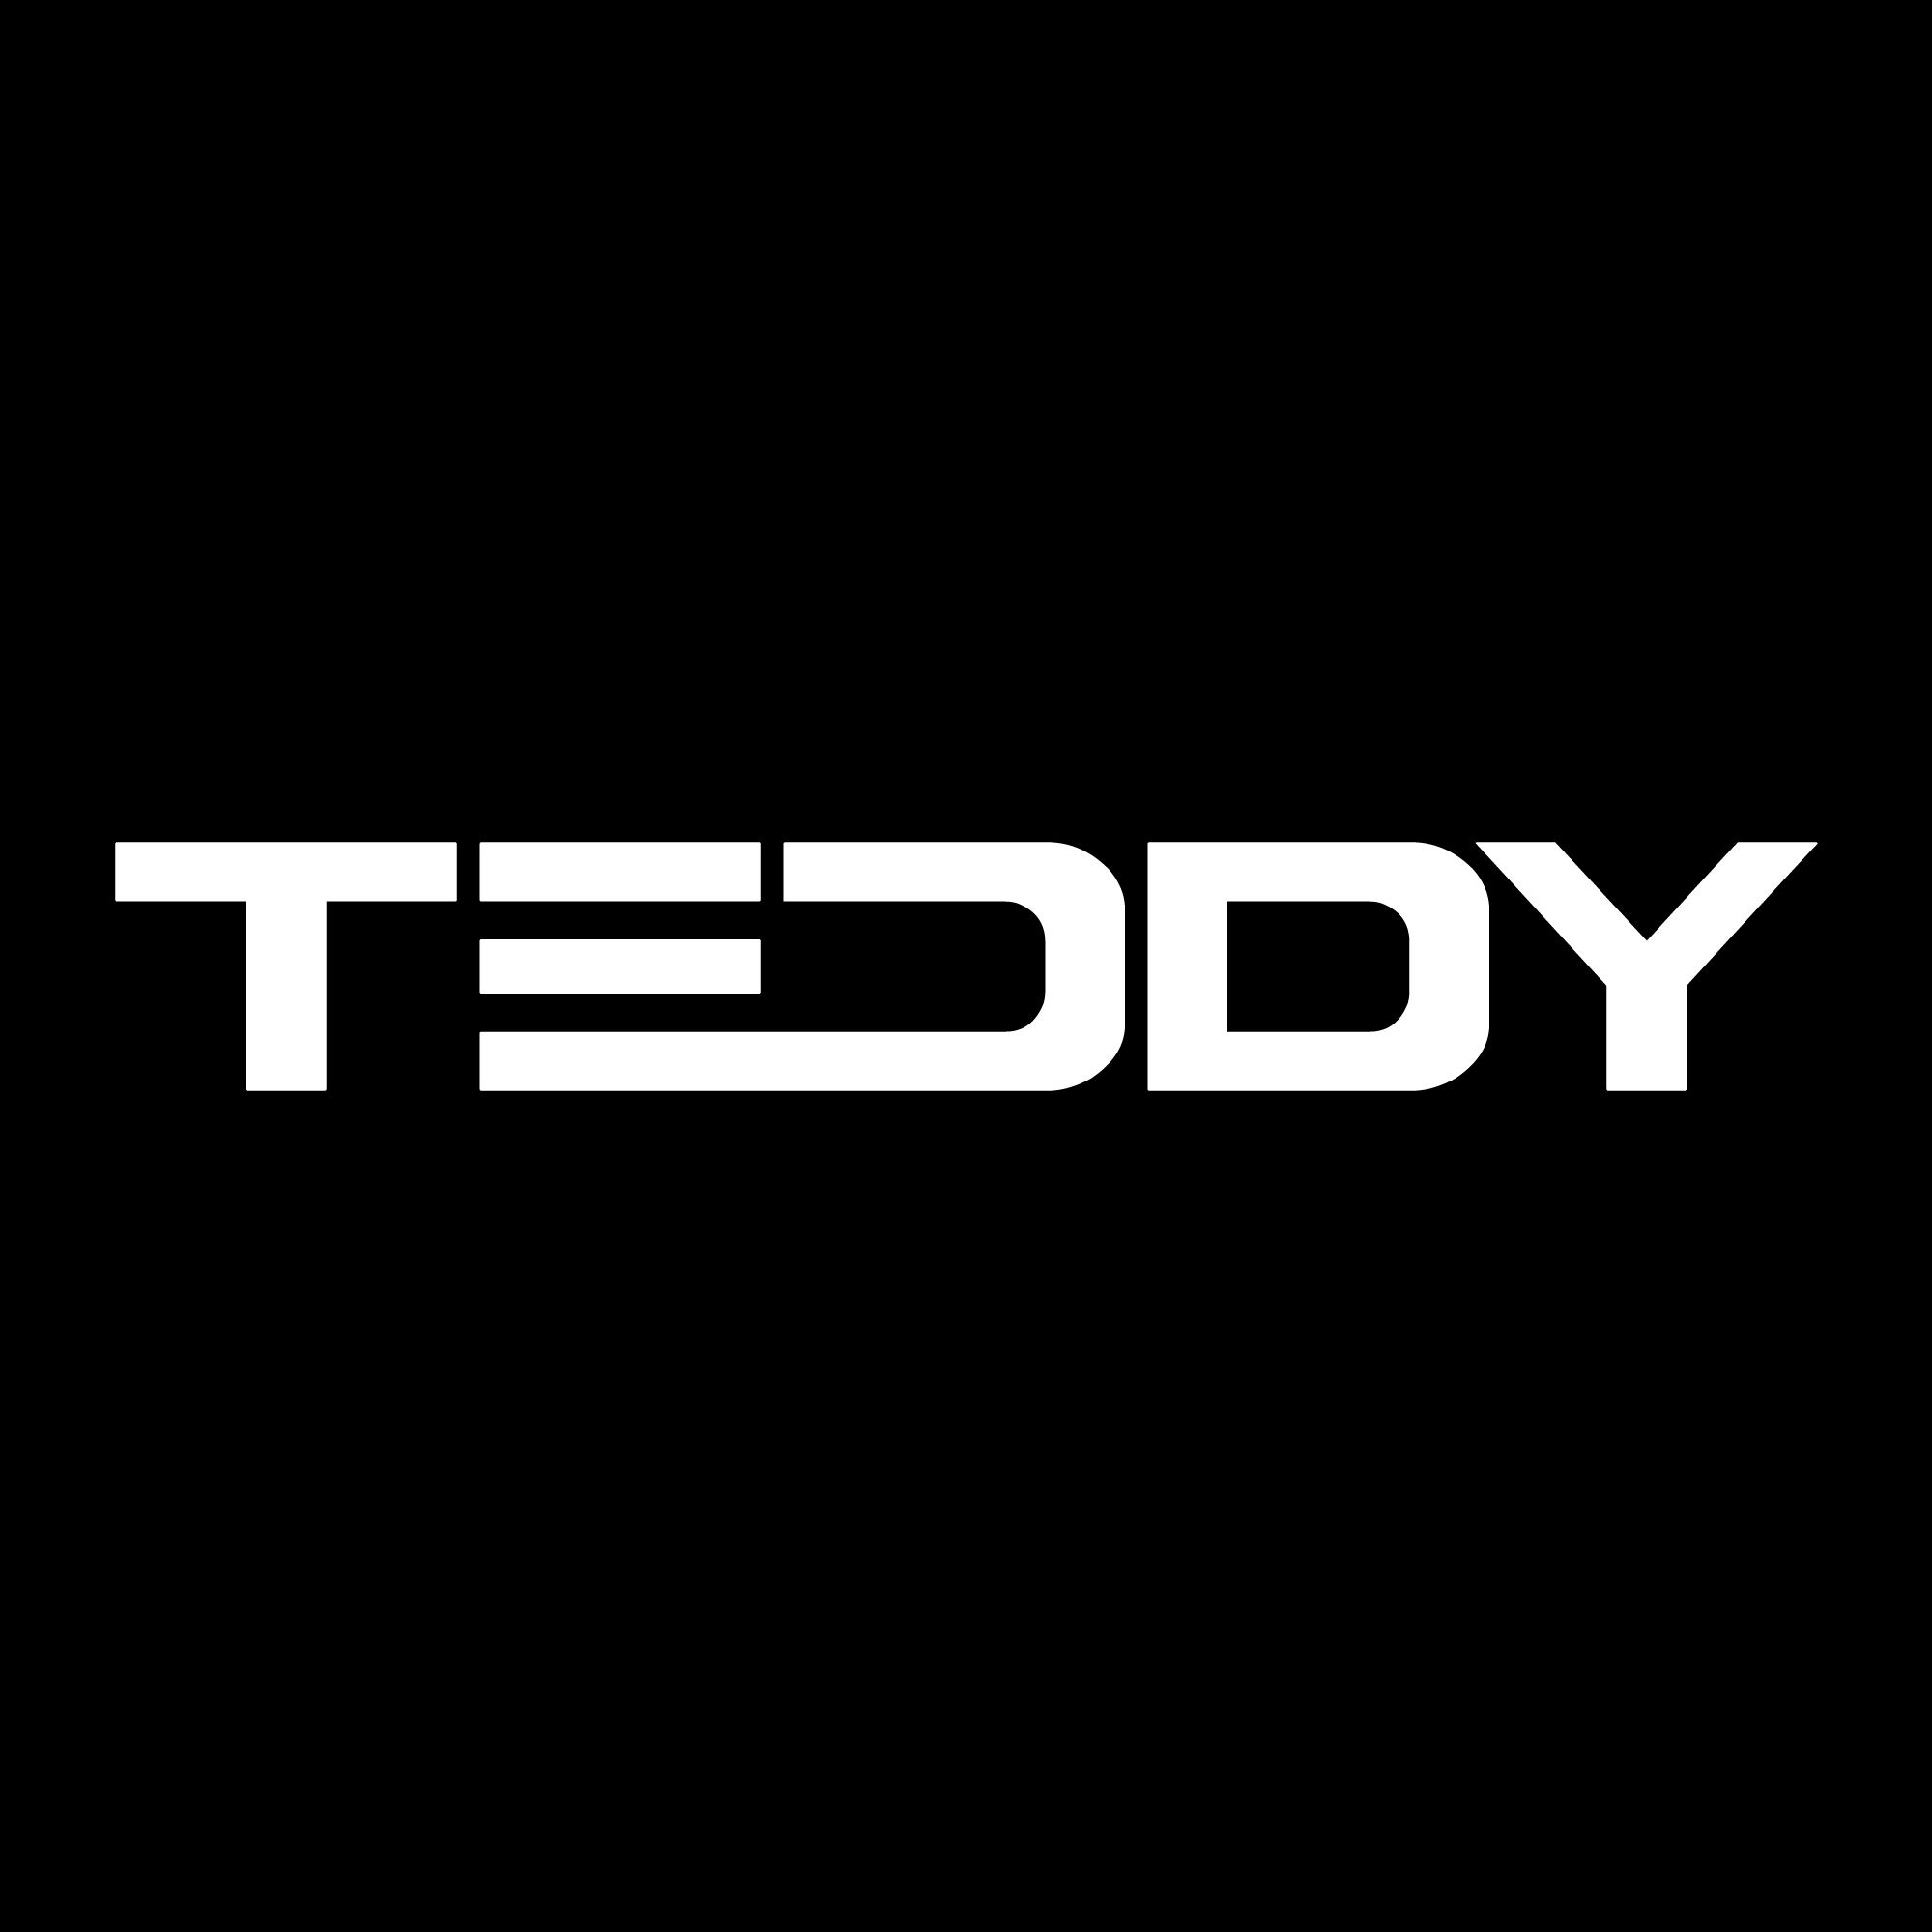 Download XEM NHƯ EM CHẲNG MAY - TEDDY x GUANG REMIX